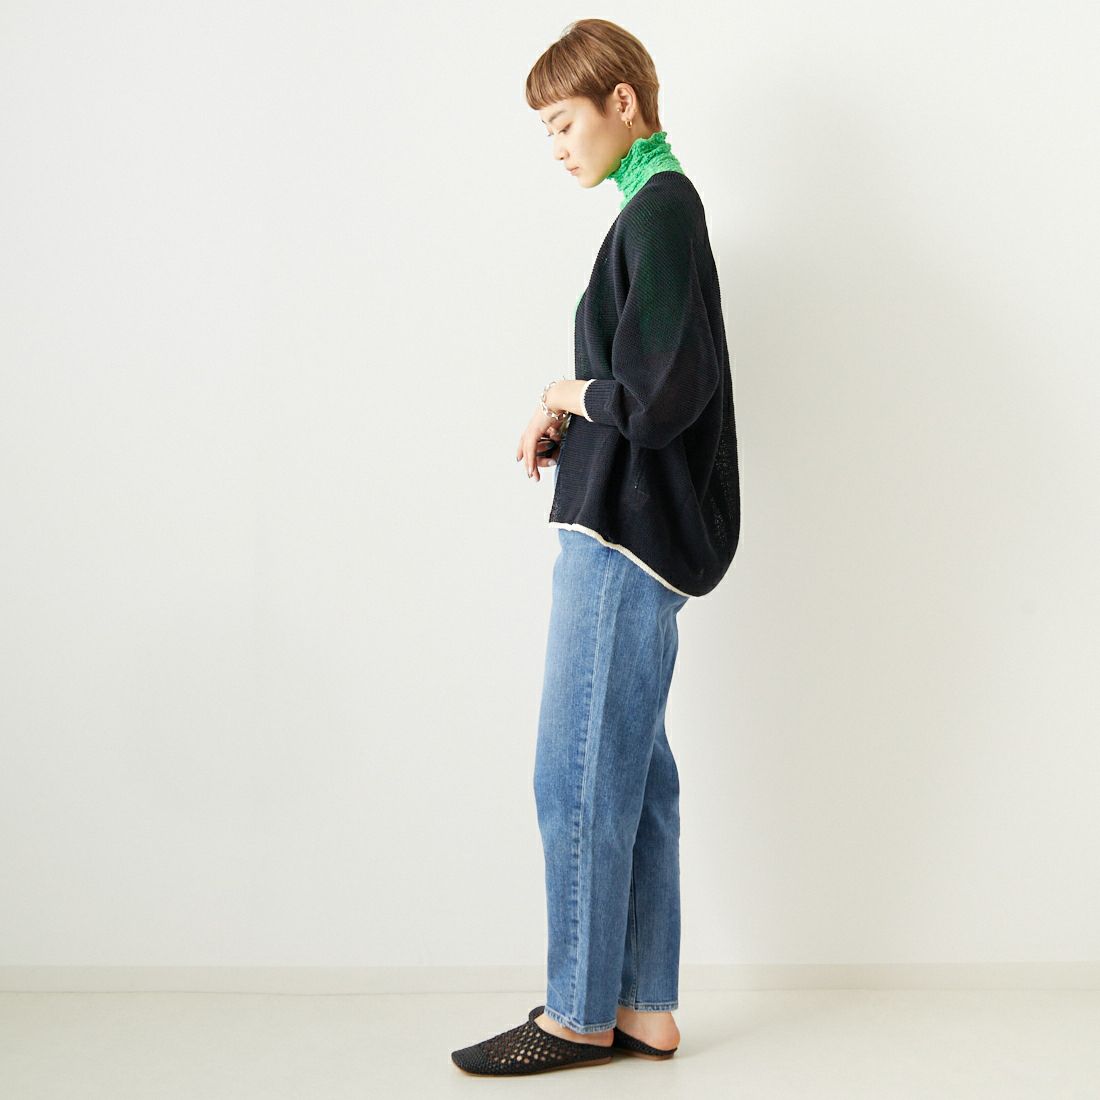 Jeans Factory Clothes [ジーンズファクトリークローズ] ホールガーメント配色カーディガン [113-1987]